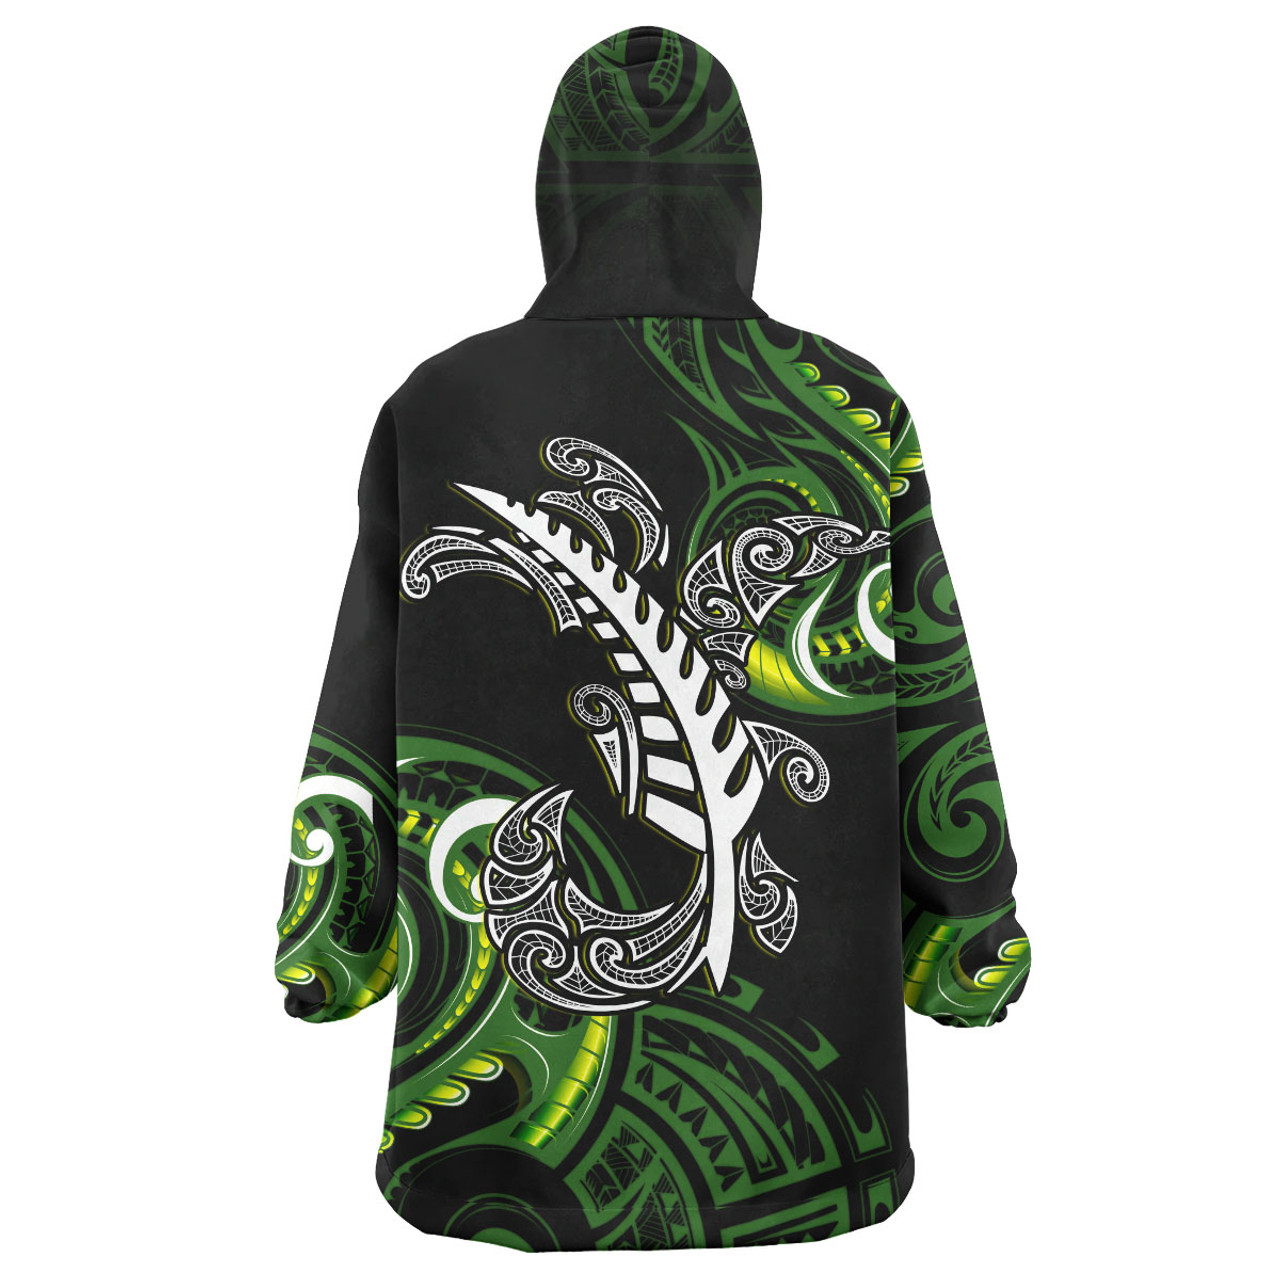 New Zealand Snug Hoodie - Aotearoa Silver Fern Maori Patterns